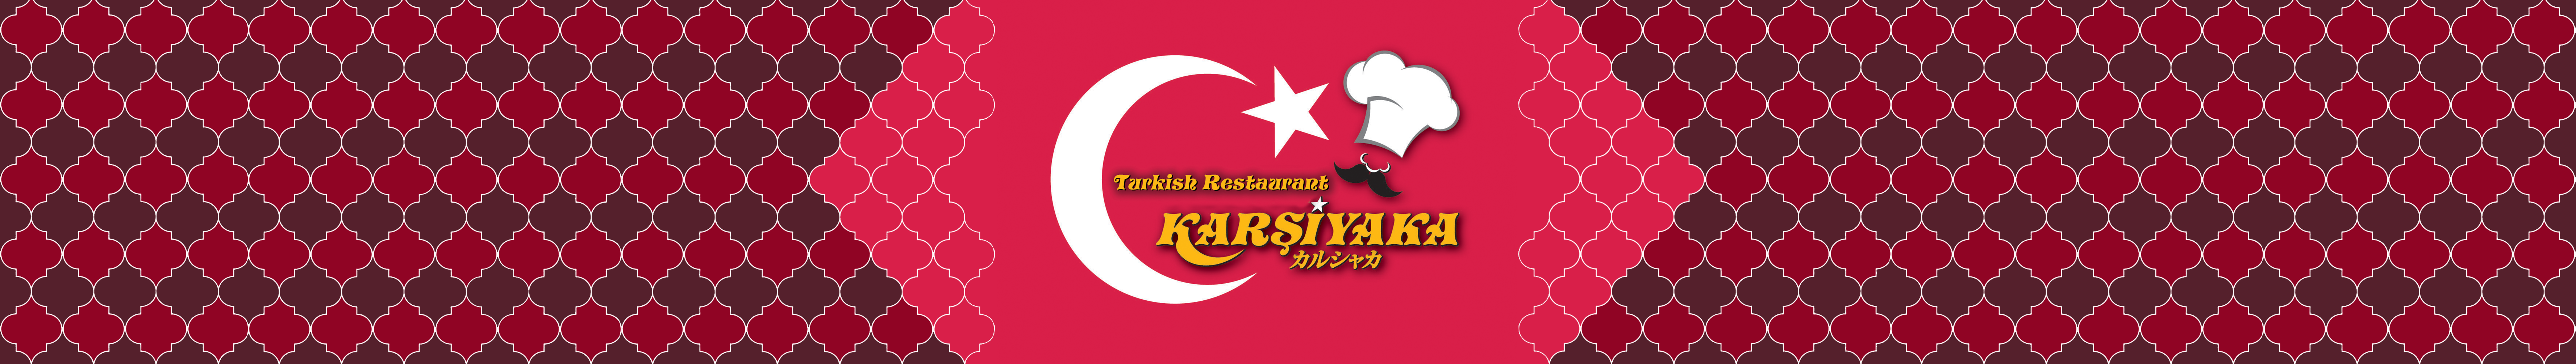 Karsiyaka Turkish Restaurant